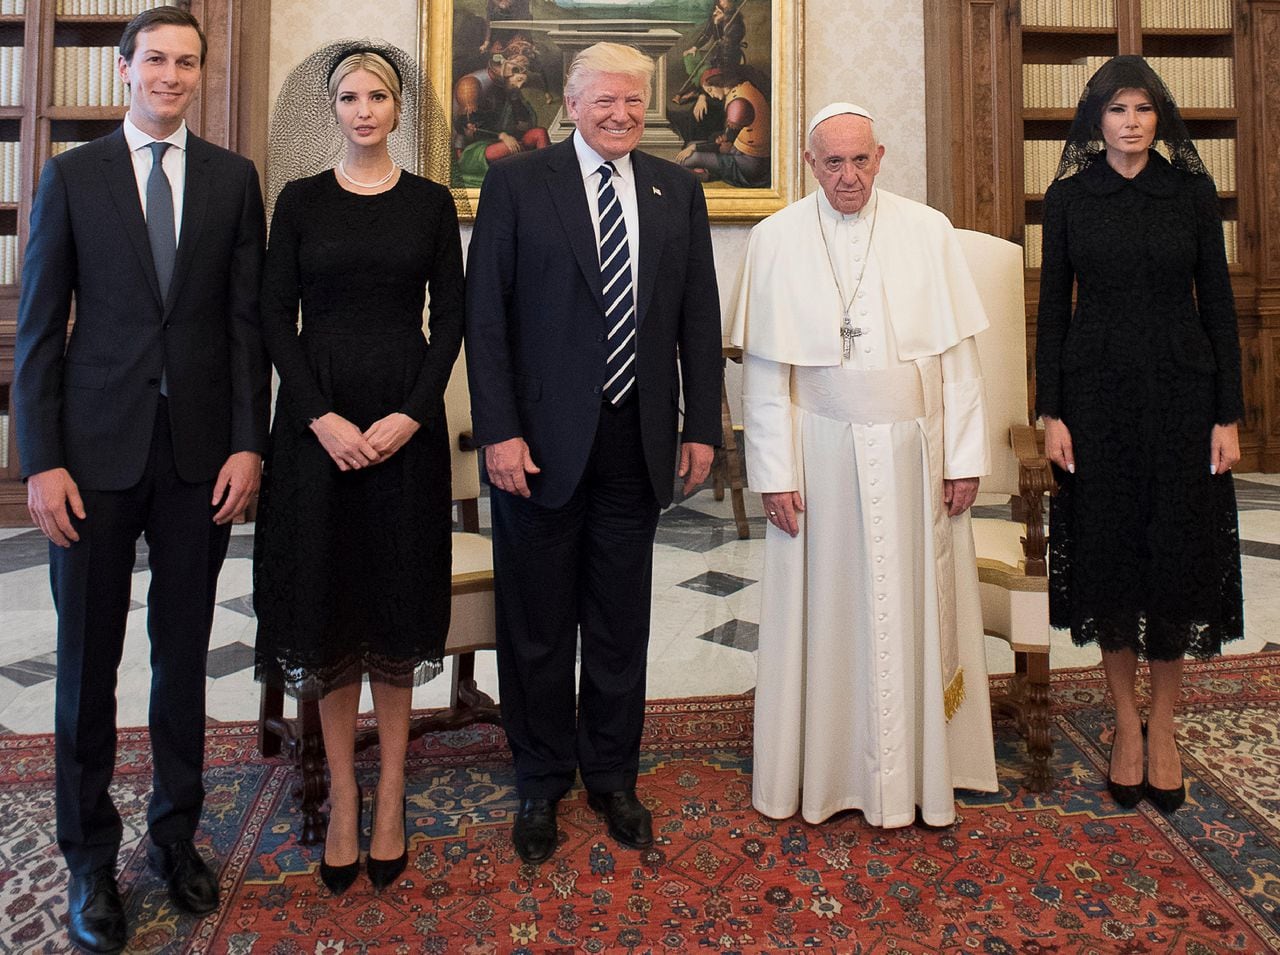 Los esposos fueron los principales asesores de Donald Trump en el gobierno y eso les acarreó enemistades. En 2017 lo acompañaron a la audiencia con el papa Francisco junto con la primera dama, Melania Trump.